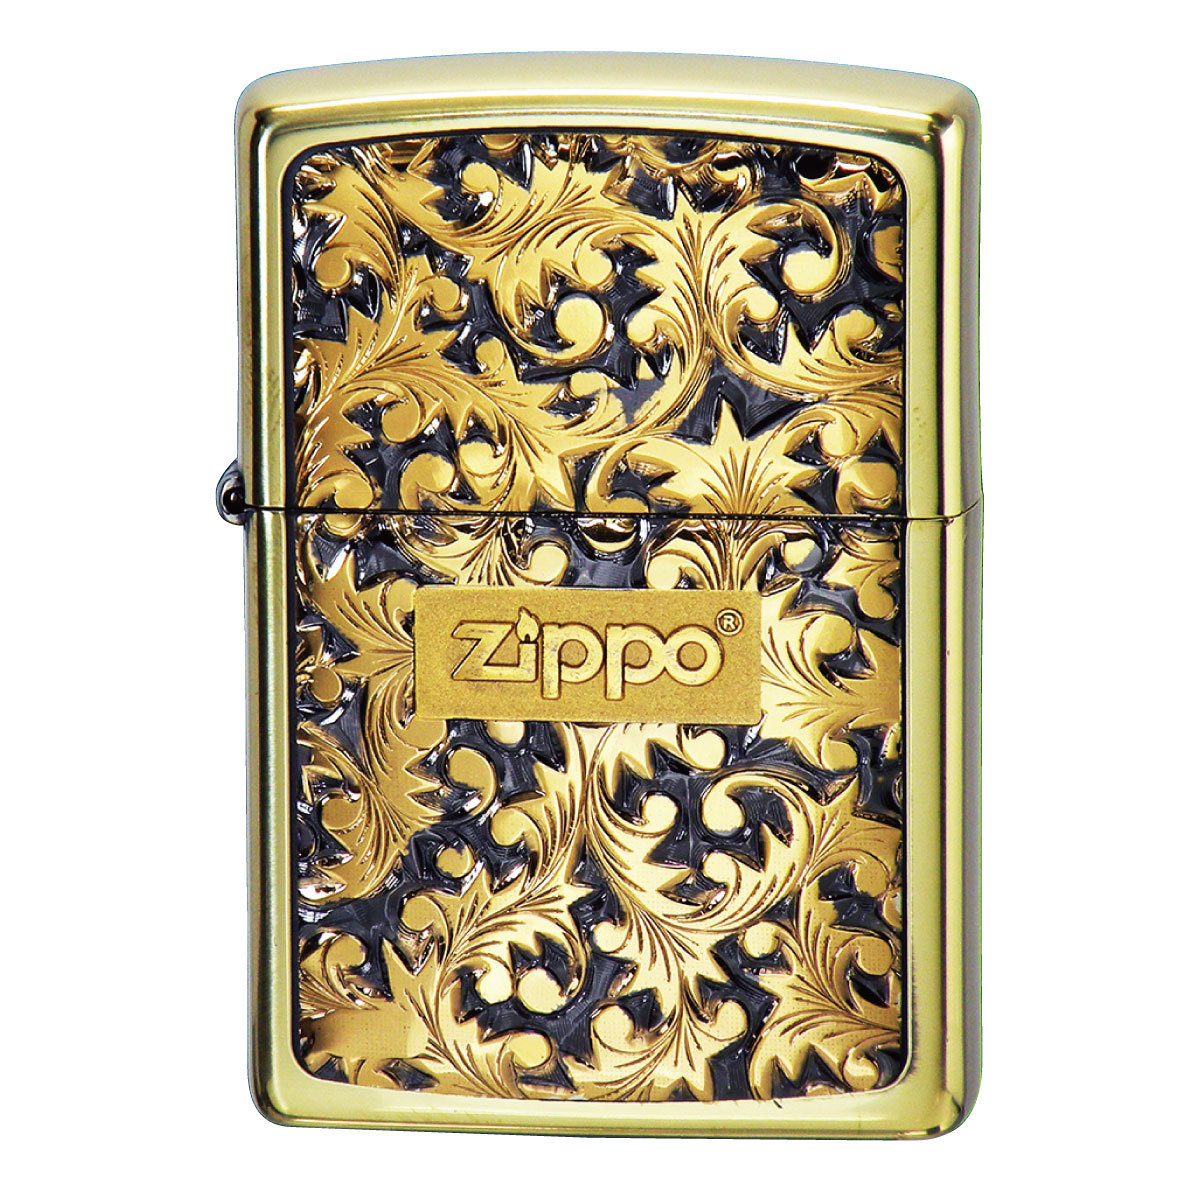 ジッポライター zippo ライター 名入れ かっこいい ブランド 高級 ジッポーライター オイルライター 200 両面加工 唐草 模様 彫刻  鏡面仕上げ ゴールド 金 シル